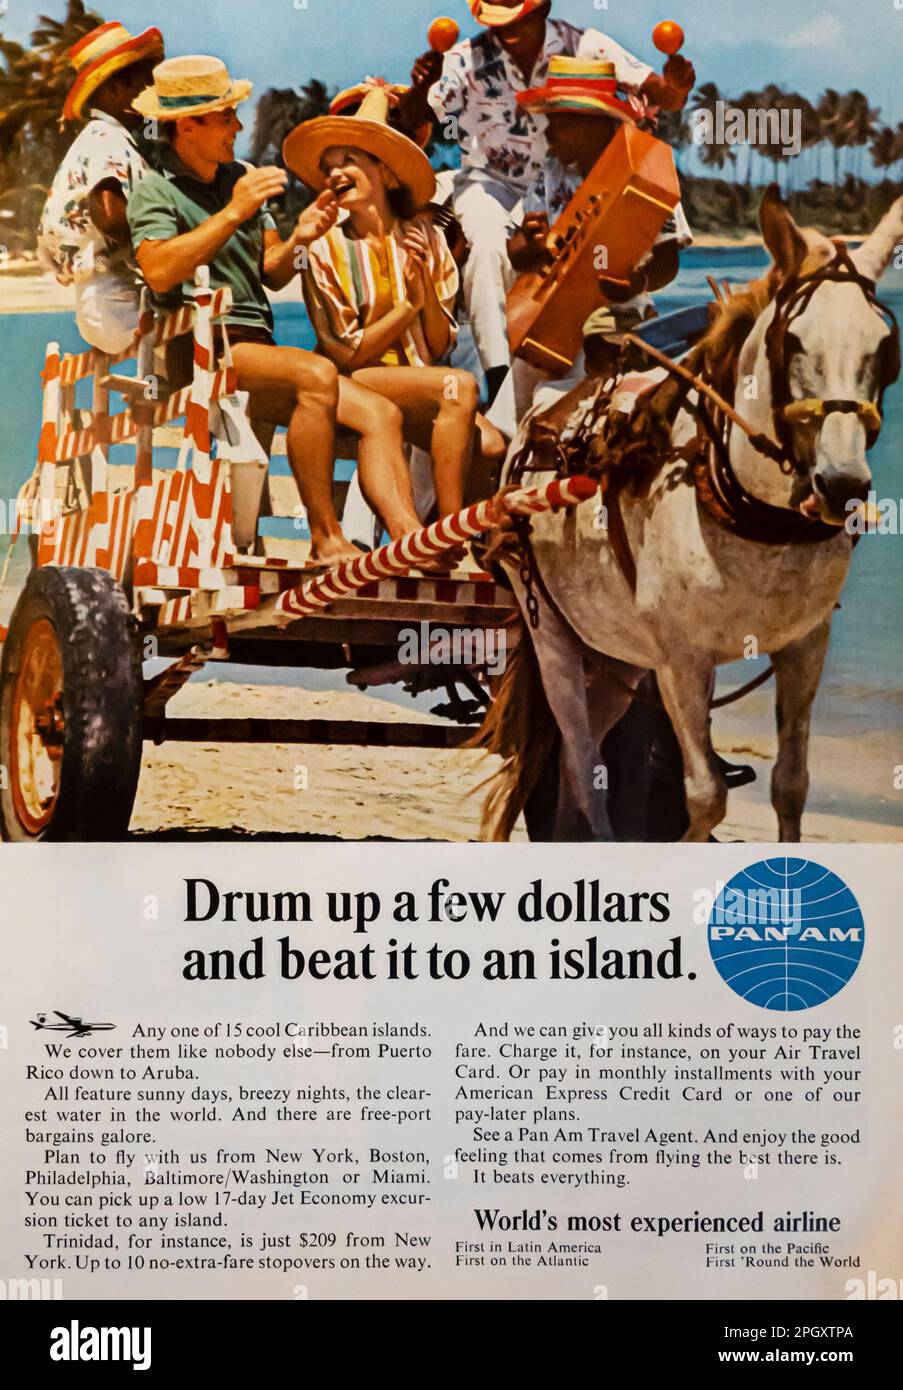 PAN Am publicité aérienne panaméricaine dans un magazine NatGeo, mai 1965 Banque D'Images